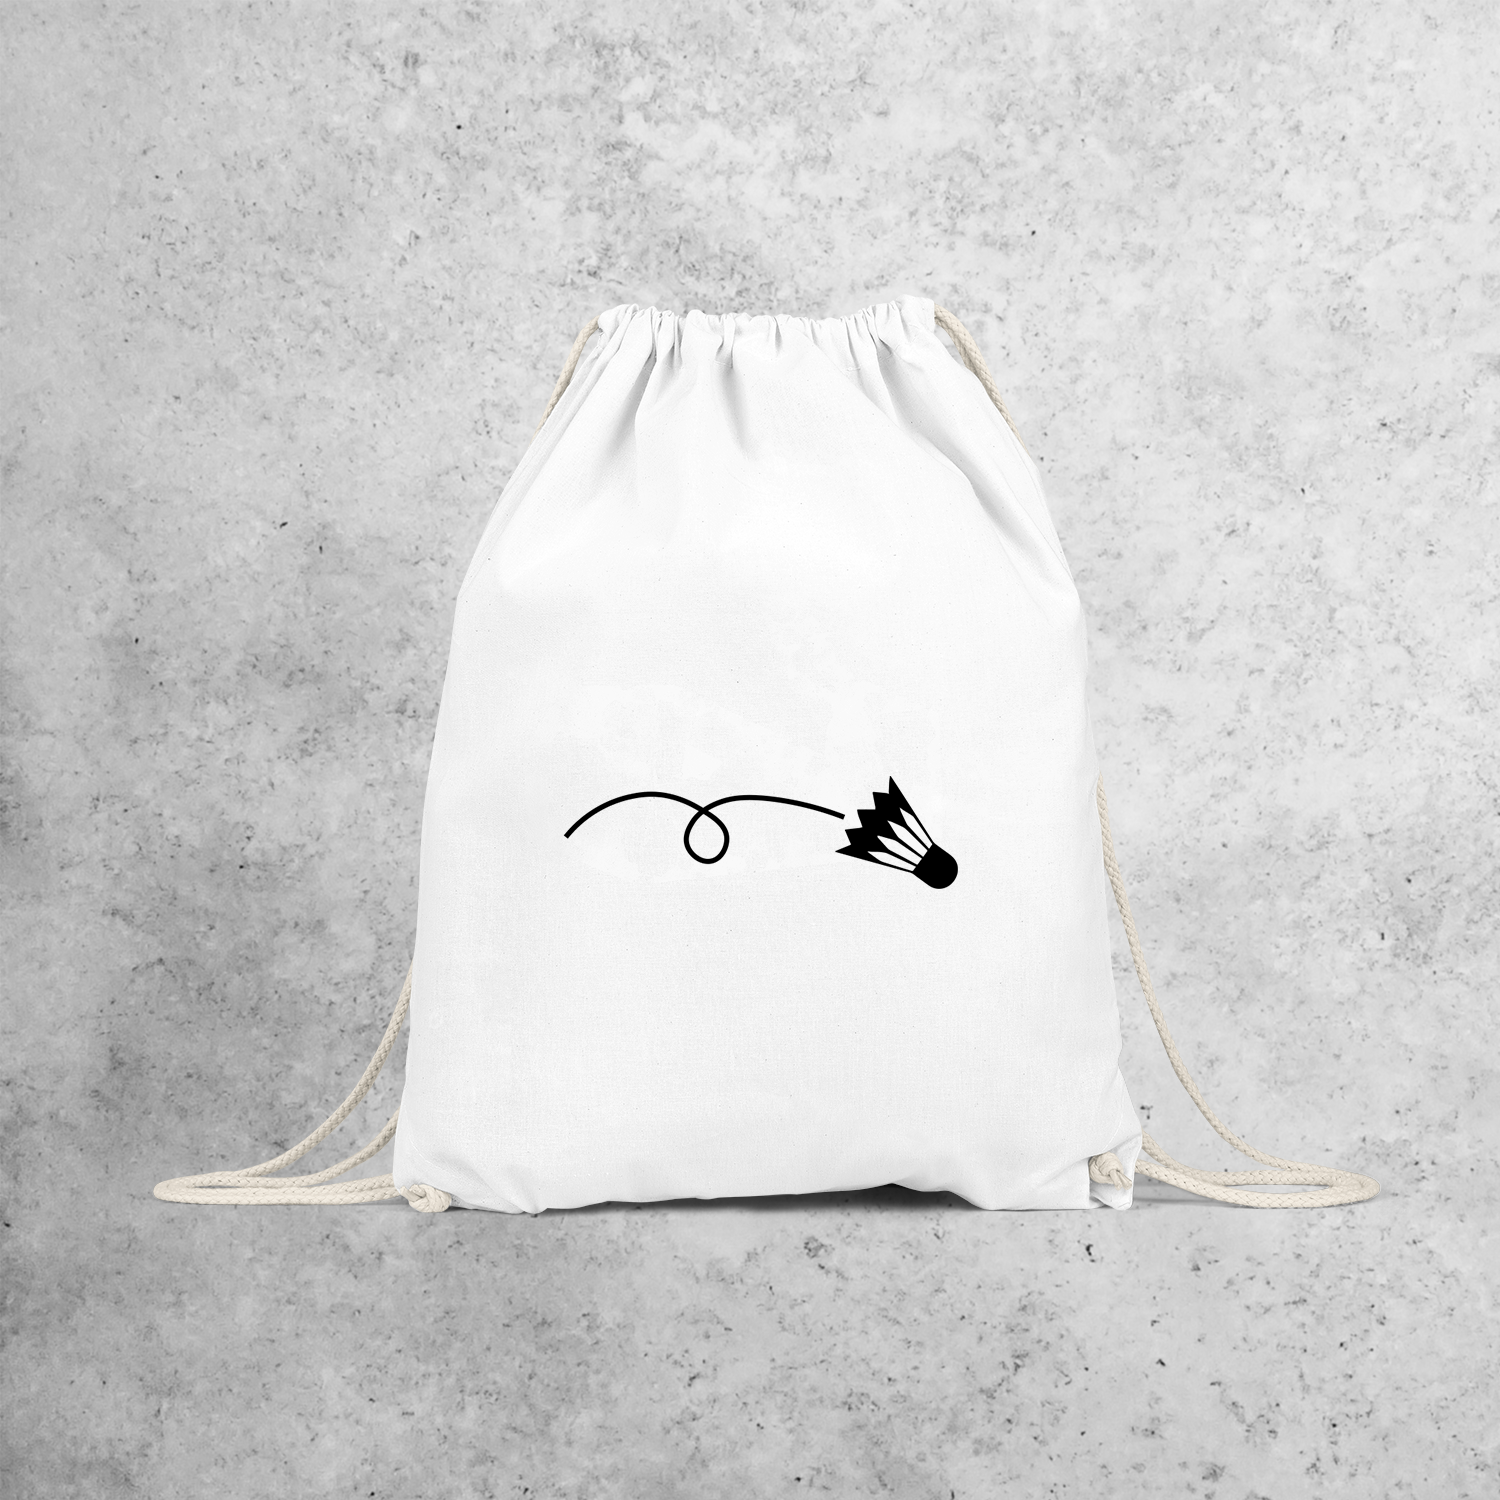 Badminton backpack